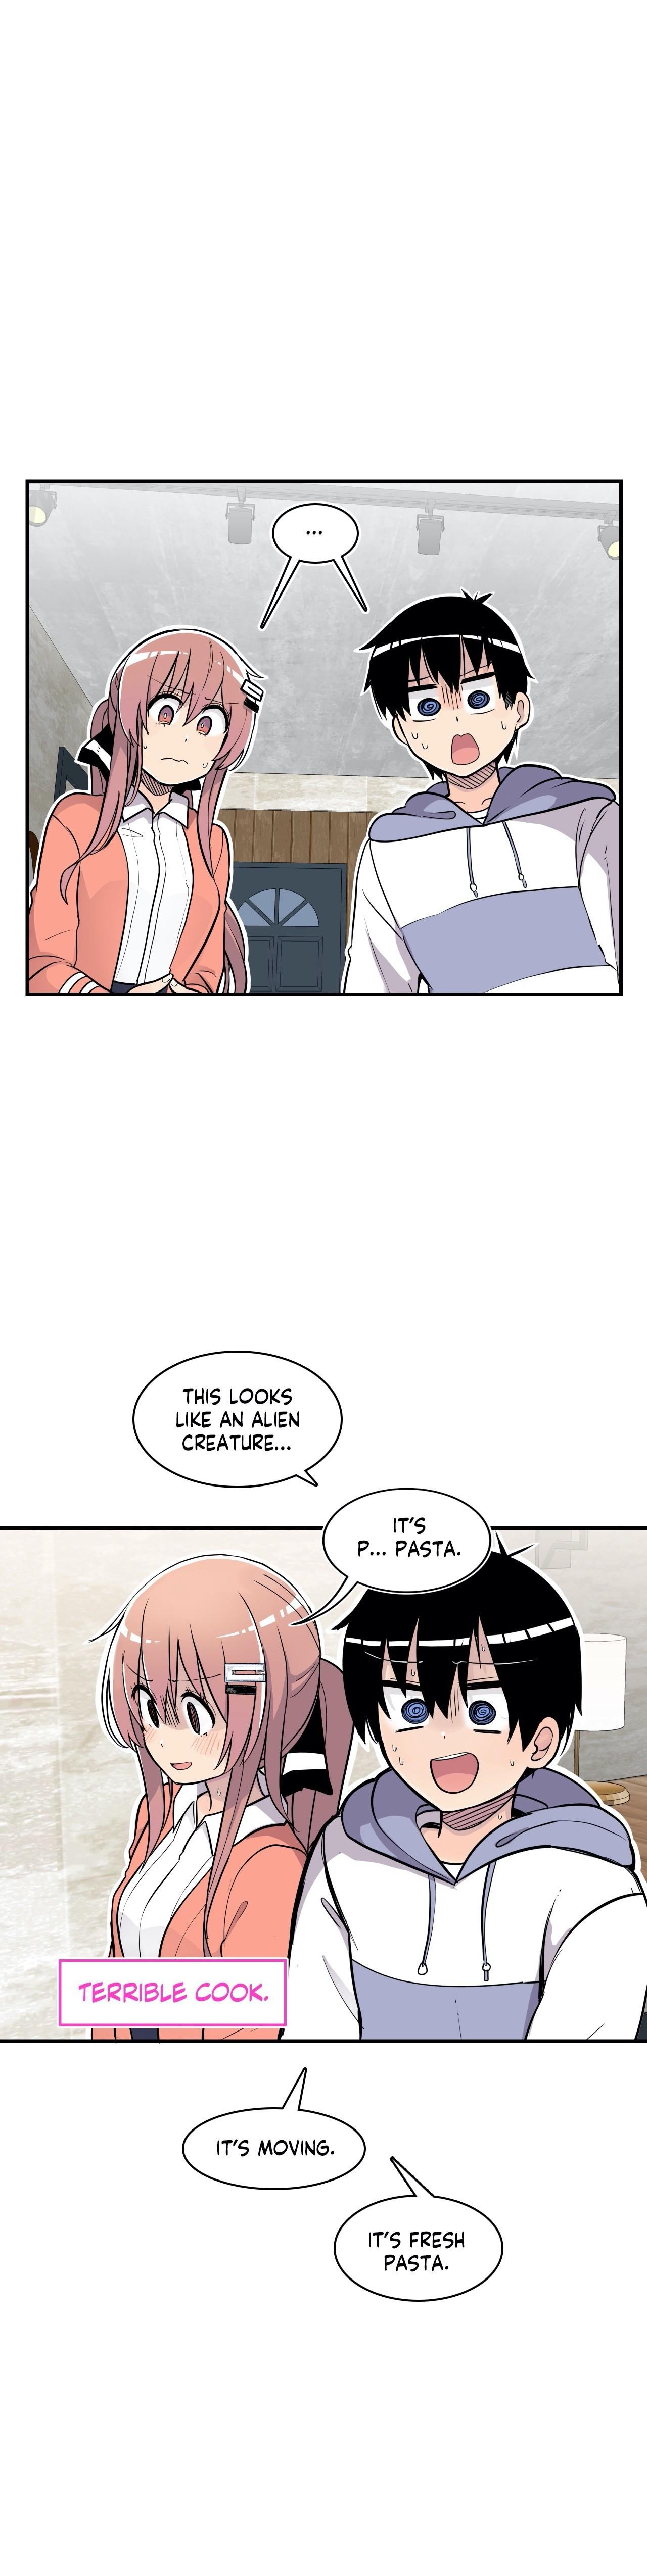 Erotic Manga Department! - Page 3